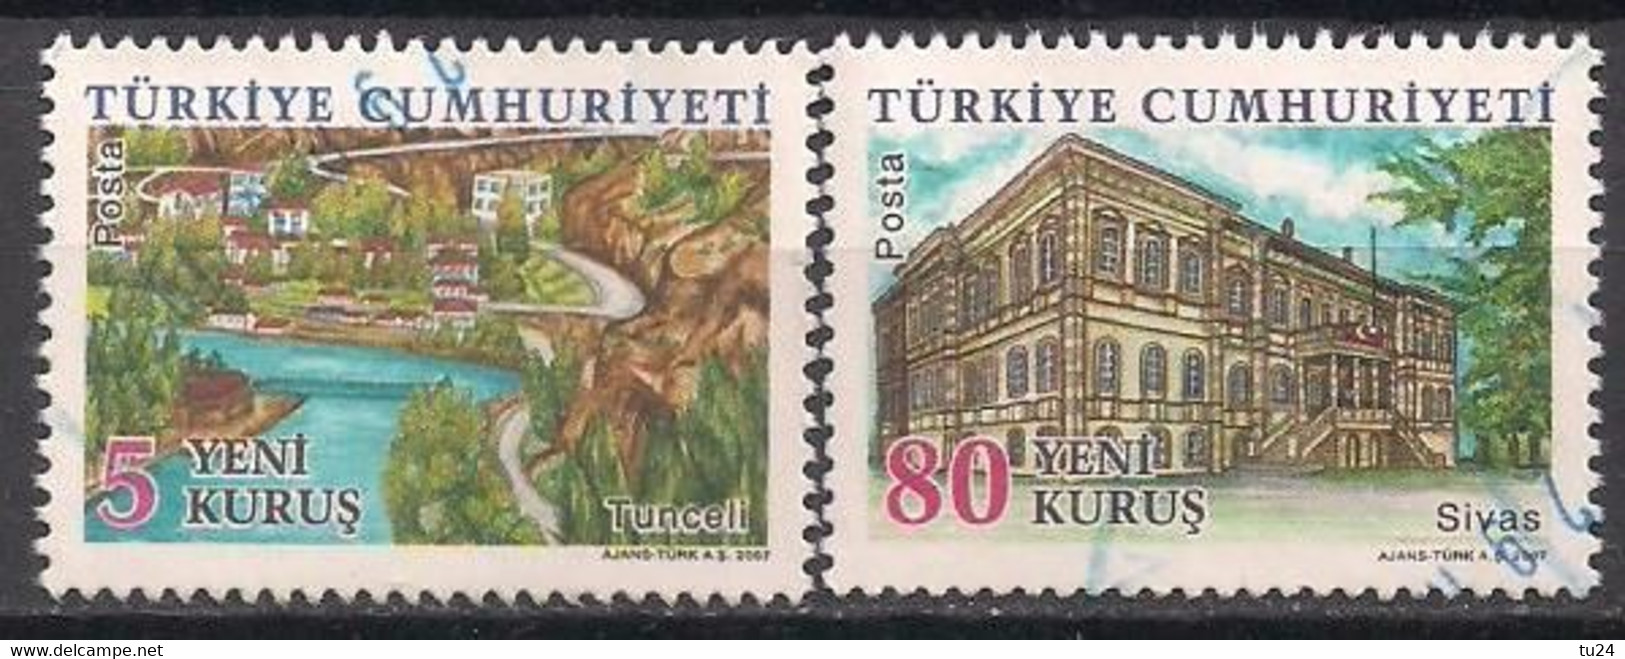 Türkei  (2007)  Mi.Nr.  3632 + 3636  Gest. / Used  (1cs11) - Usati